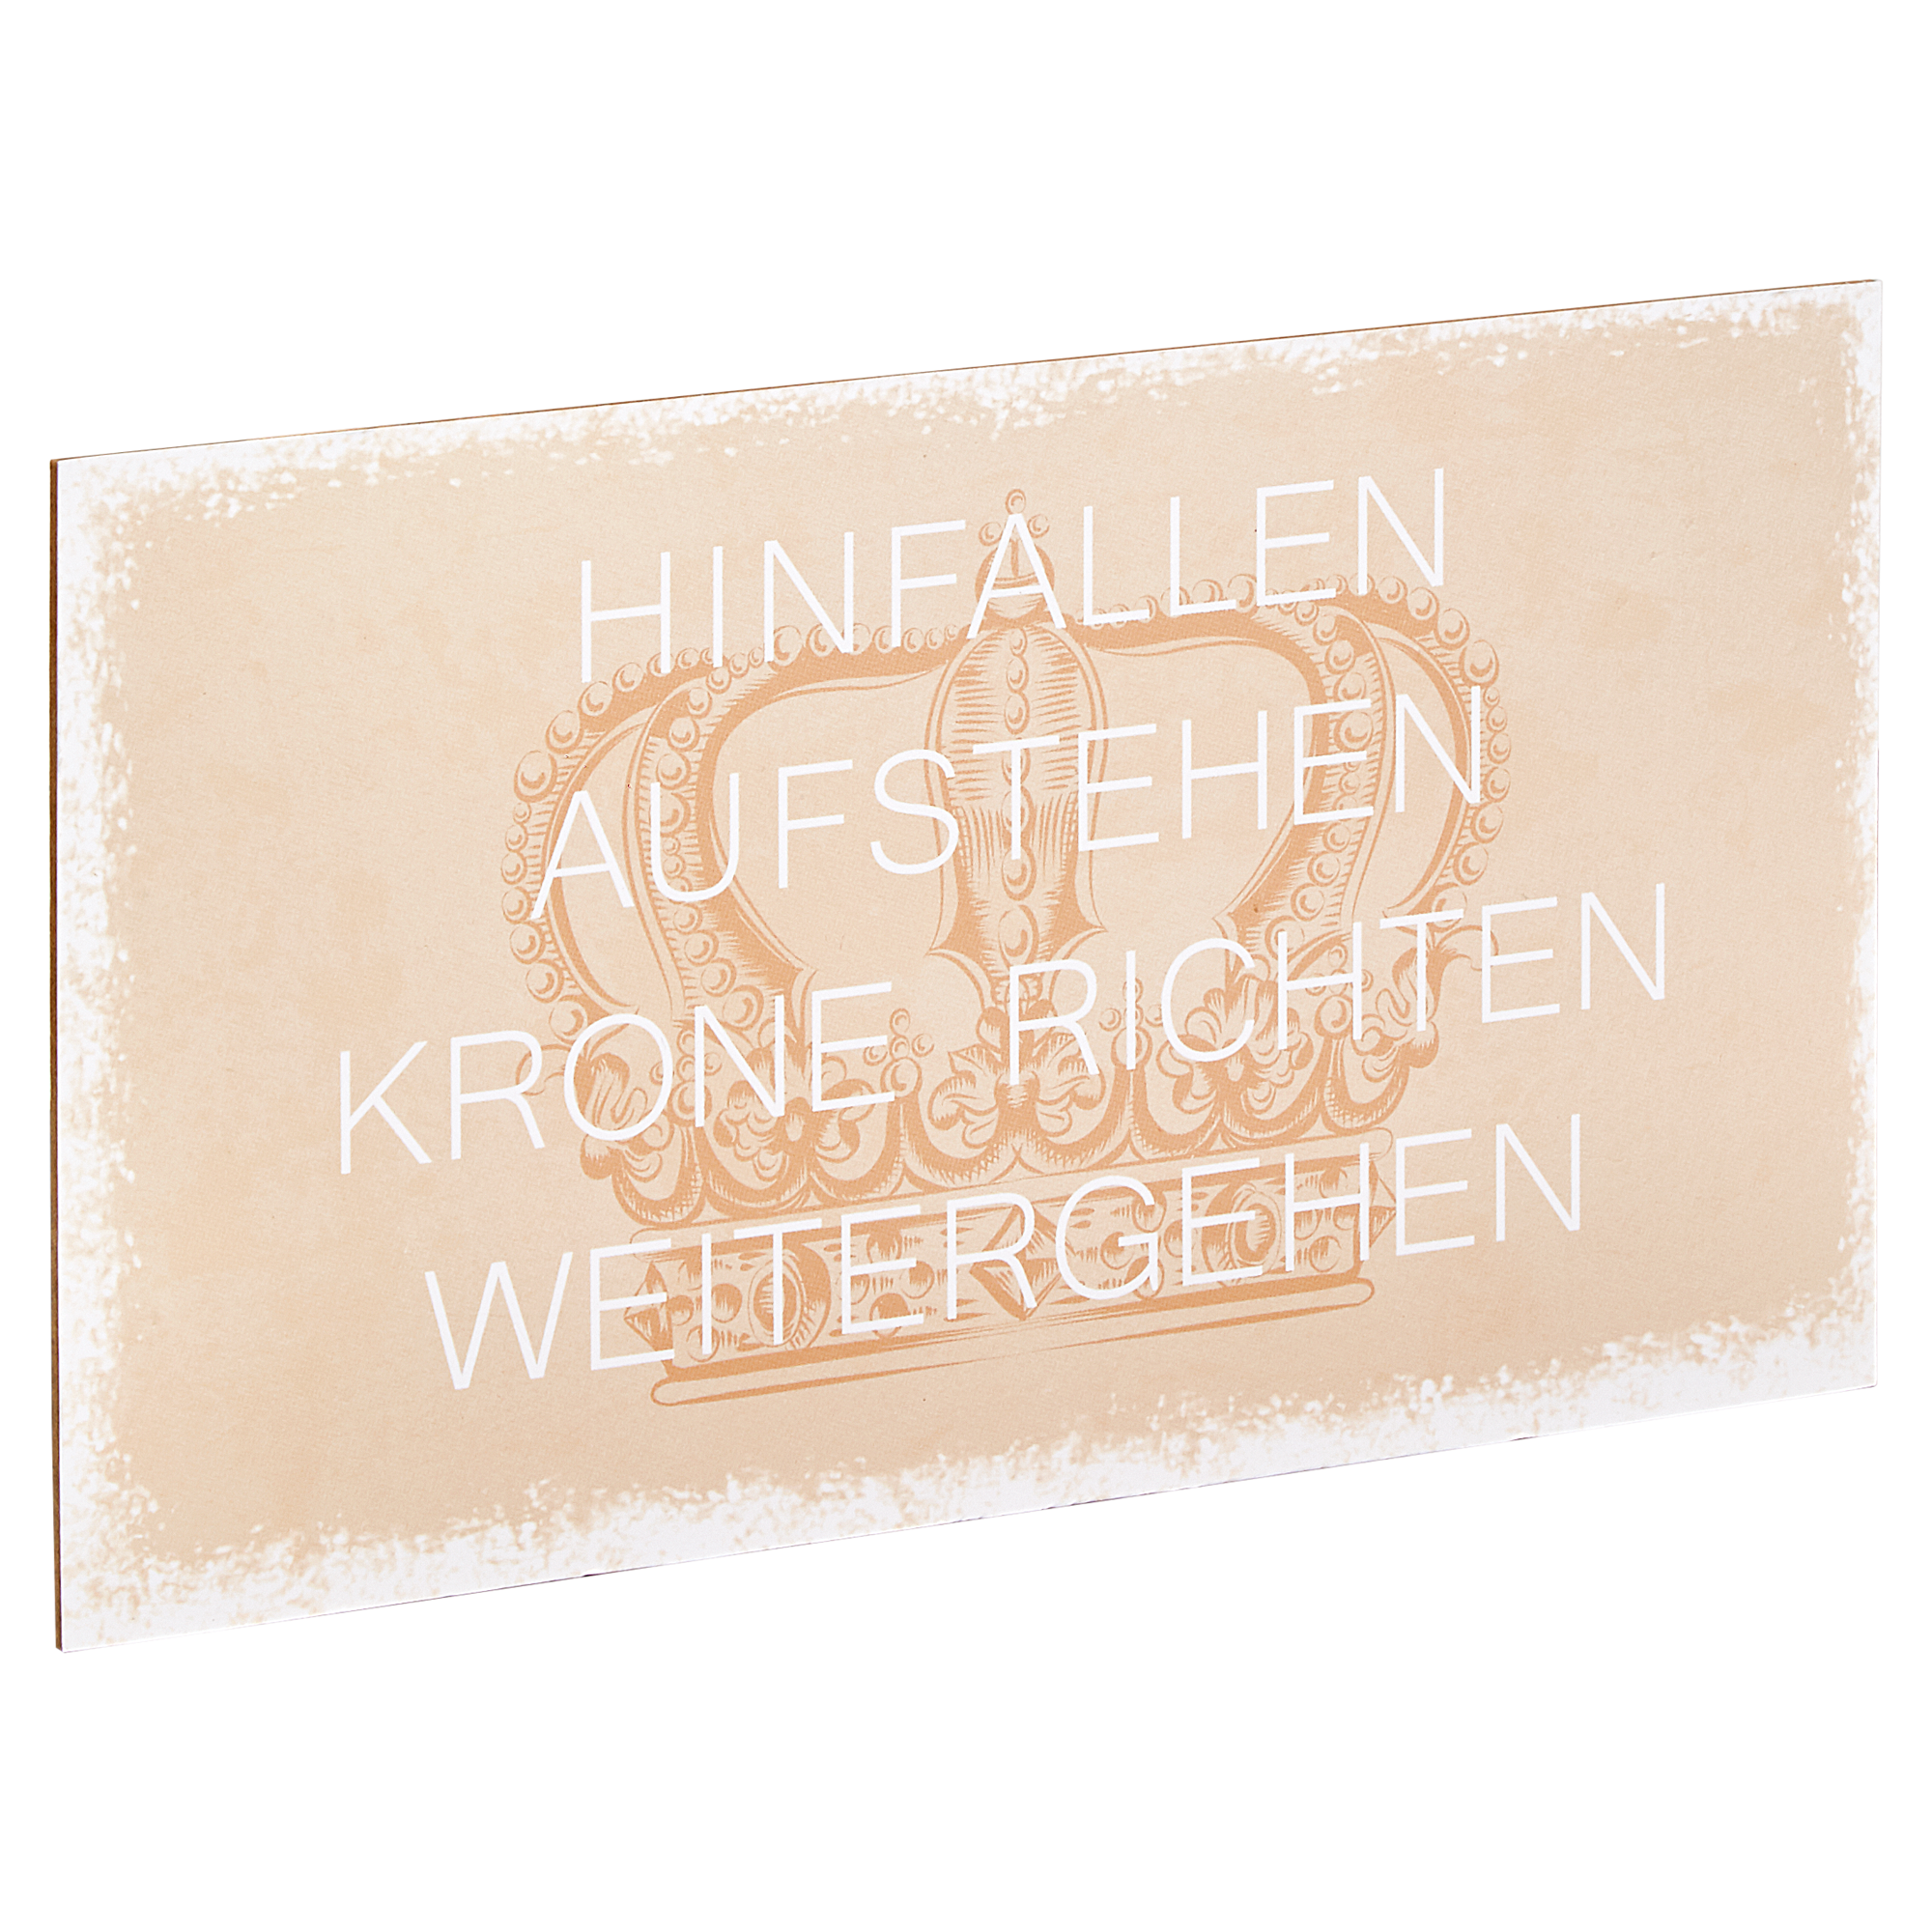 Decopanel "Weitergehen" 27 x 15 cm + product picture